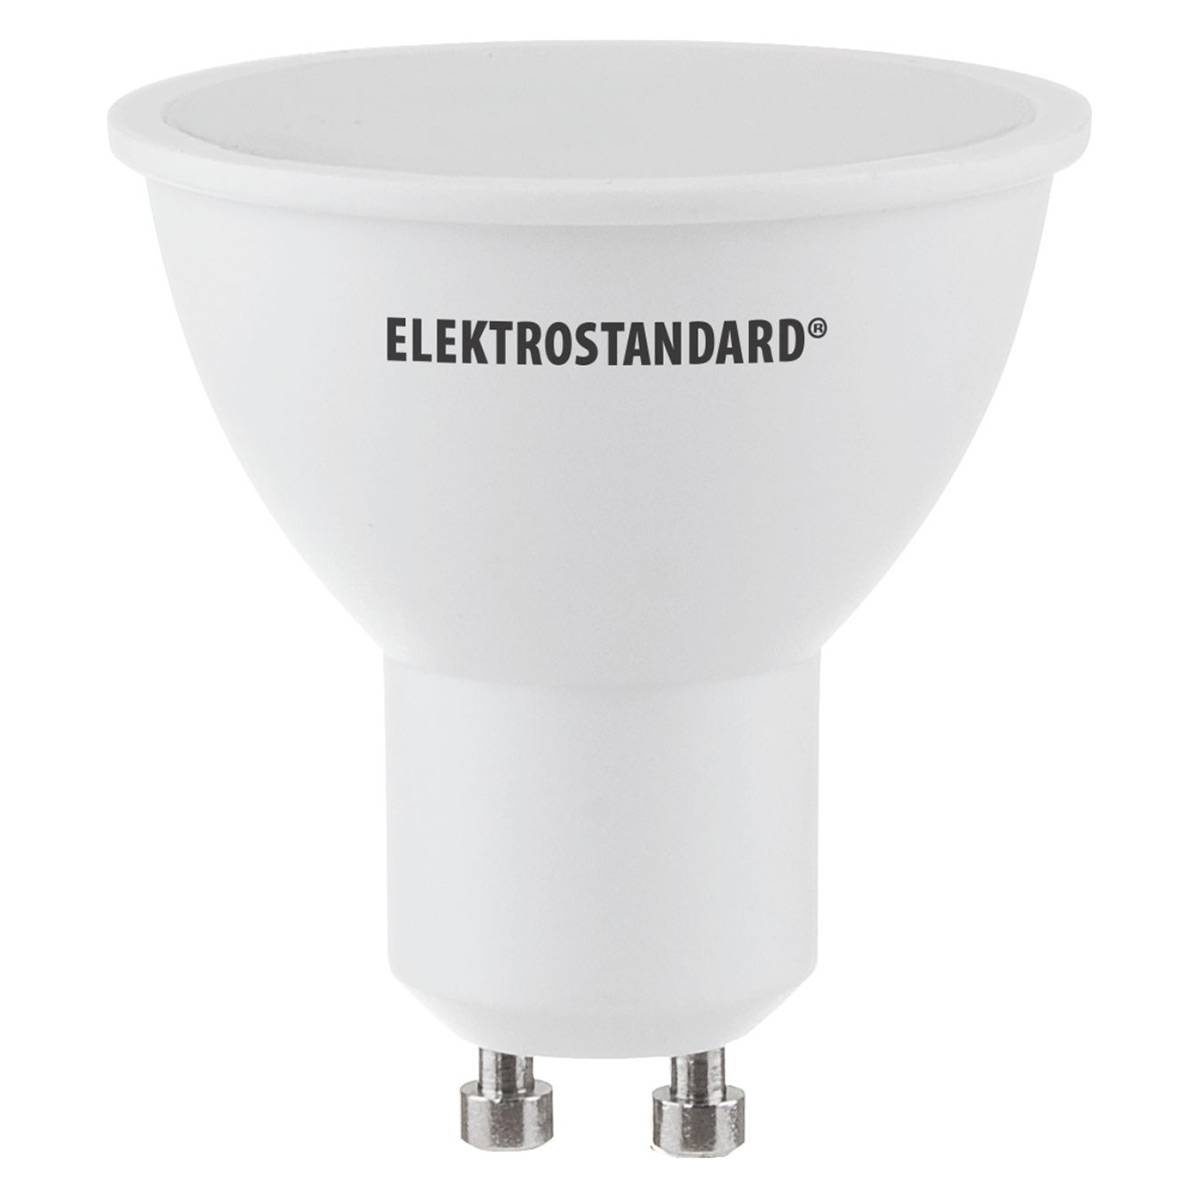 Светодиодная лампа Elektrostandard a036051 GU10 5Вт 3300К